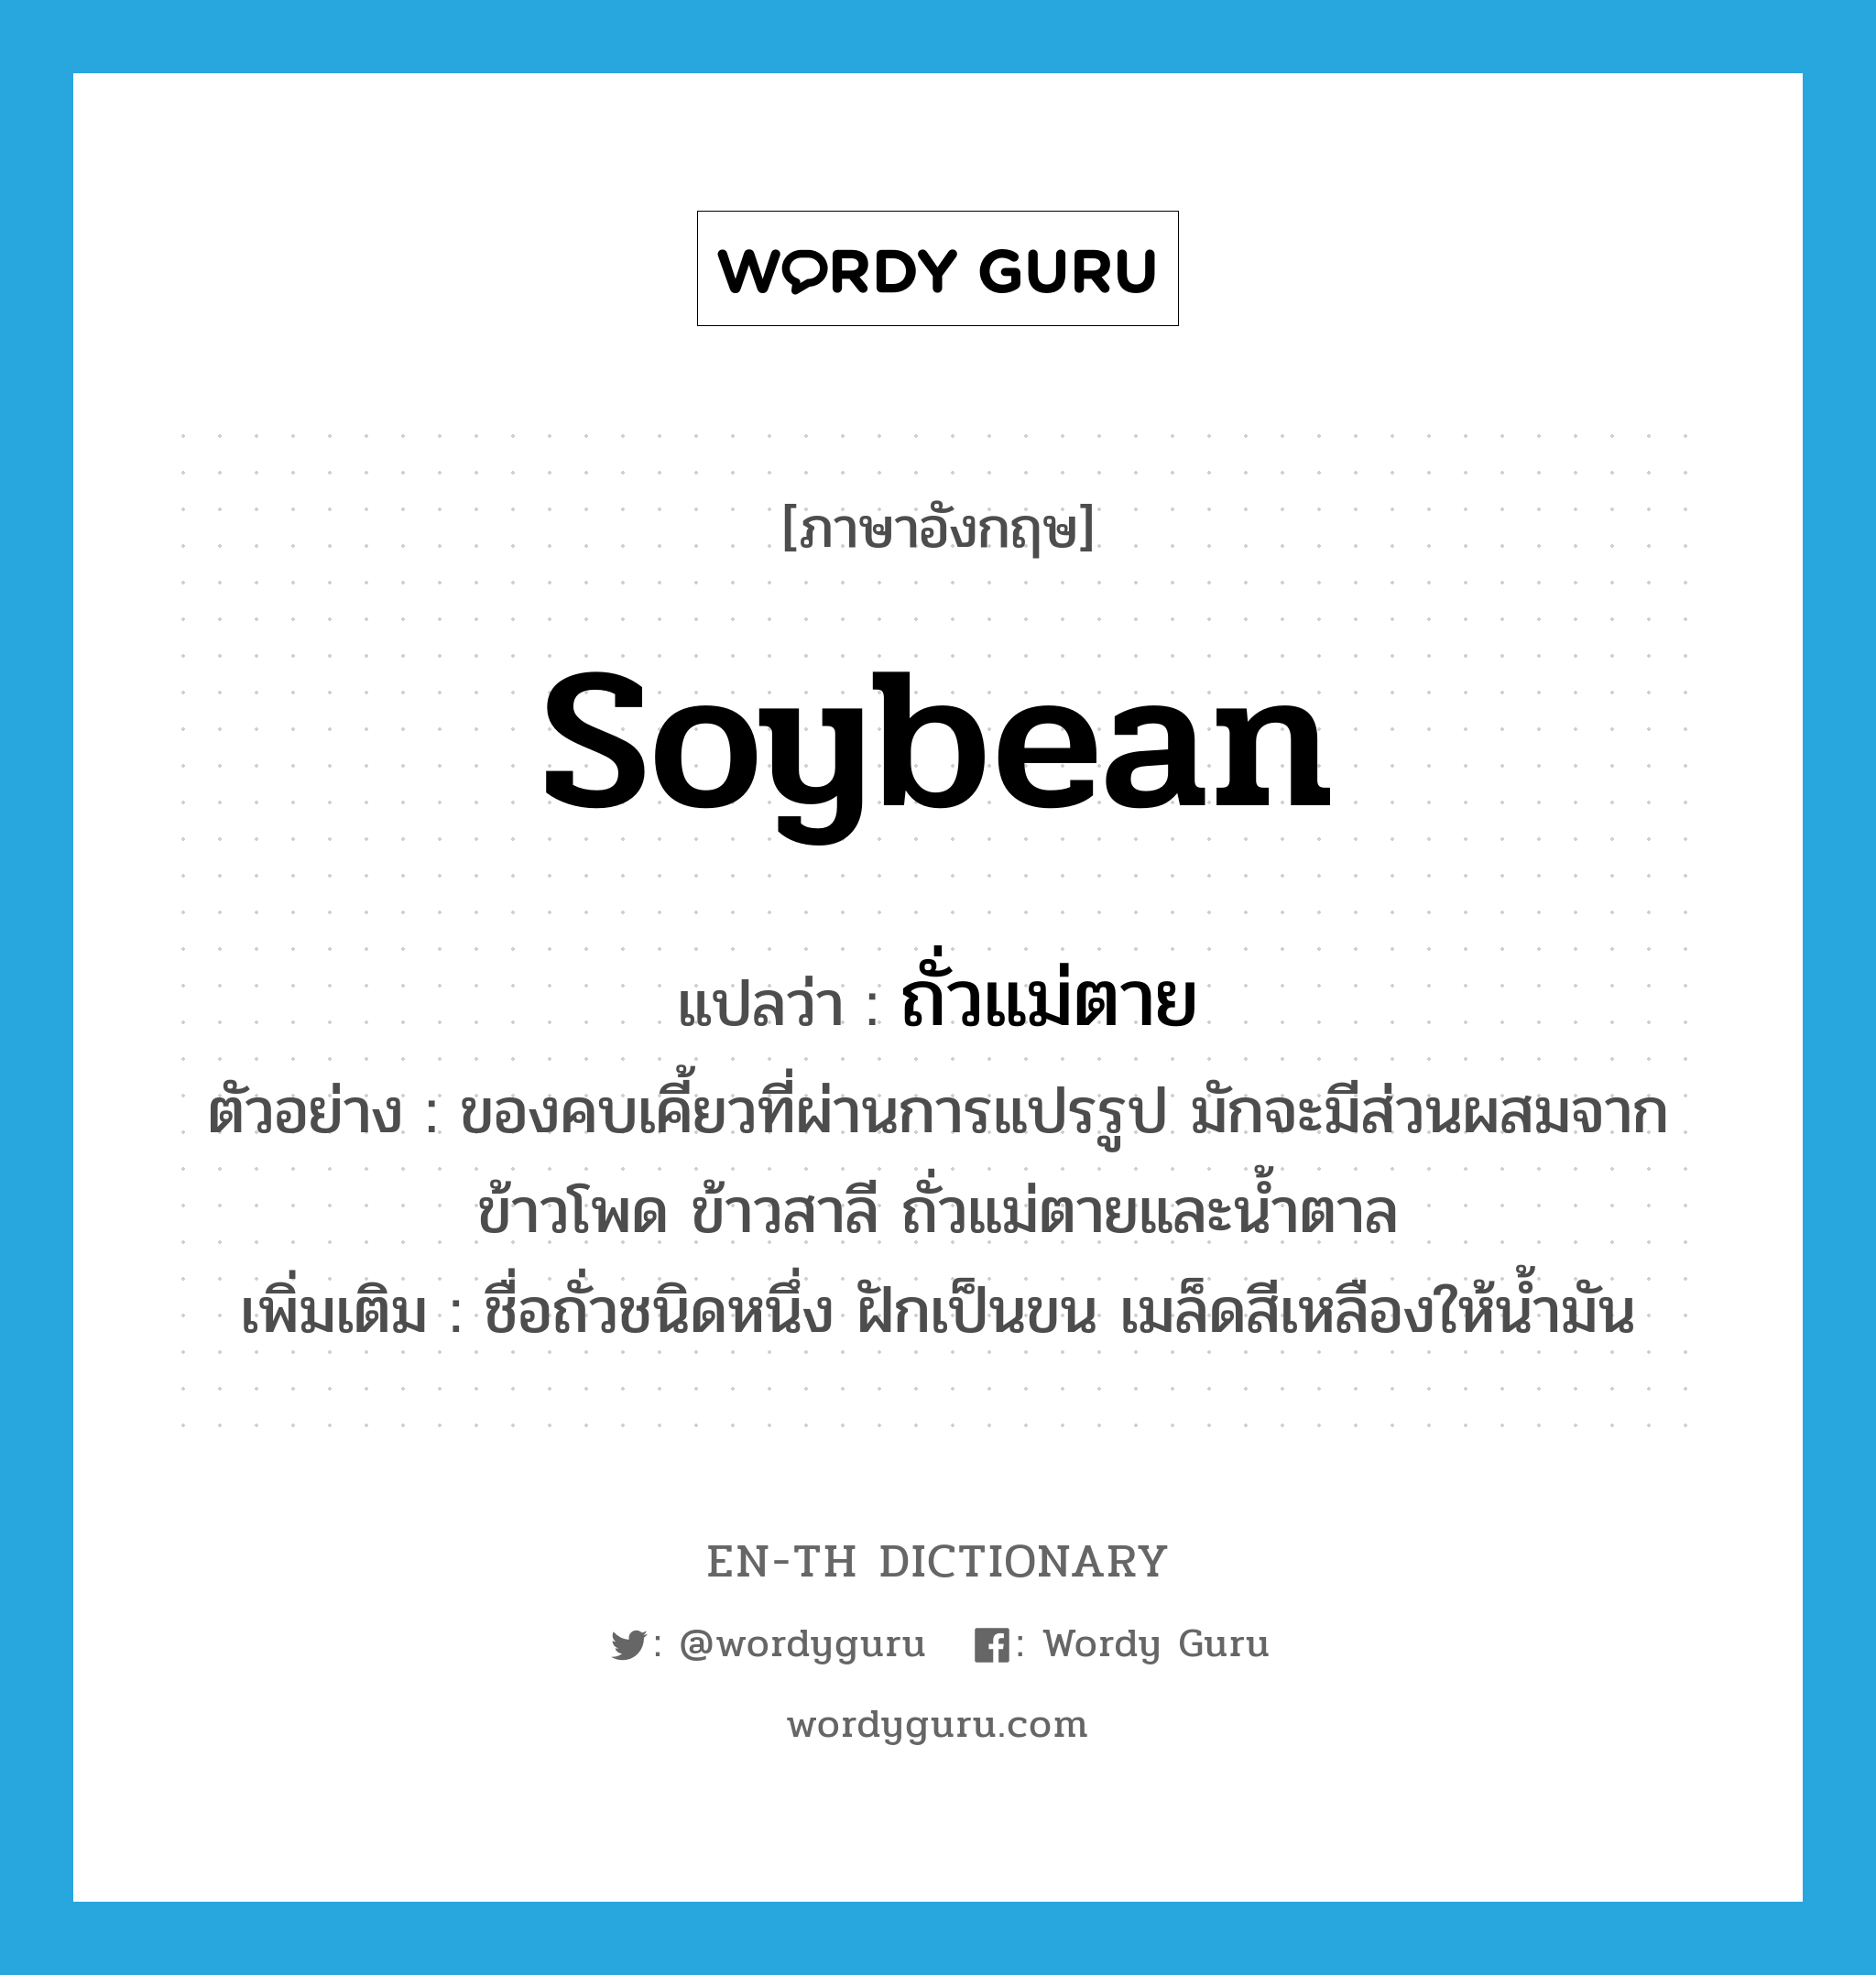 soybean แปลว่า?, คำศัพท์ภาษาอังกฤษ soybean แปลว่า ถั่วแม่ตาย ประเภท N ตัวอย่าง ของคบเคี้ยวที่ผ่านการแปรรูป มักจะมีส่วนผสมจากข้าวโพด ข้าวสาลี ถั่วแม่ตายและน้ำตาล เพิ่มเติม ชื่อถั่วชนิดหนึ่ง ฝักเป็นขน เมล็ดสีเหลืองให้น้ำมัน หมวด N